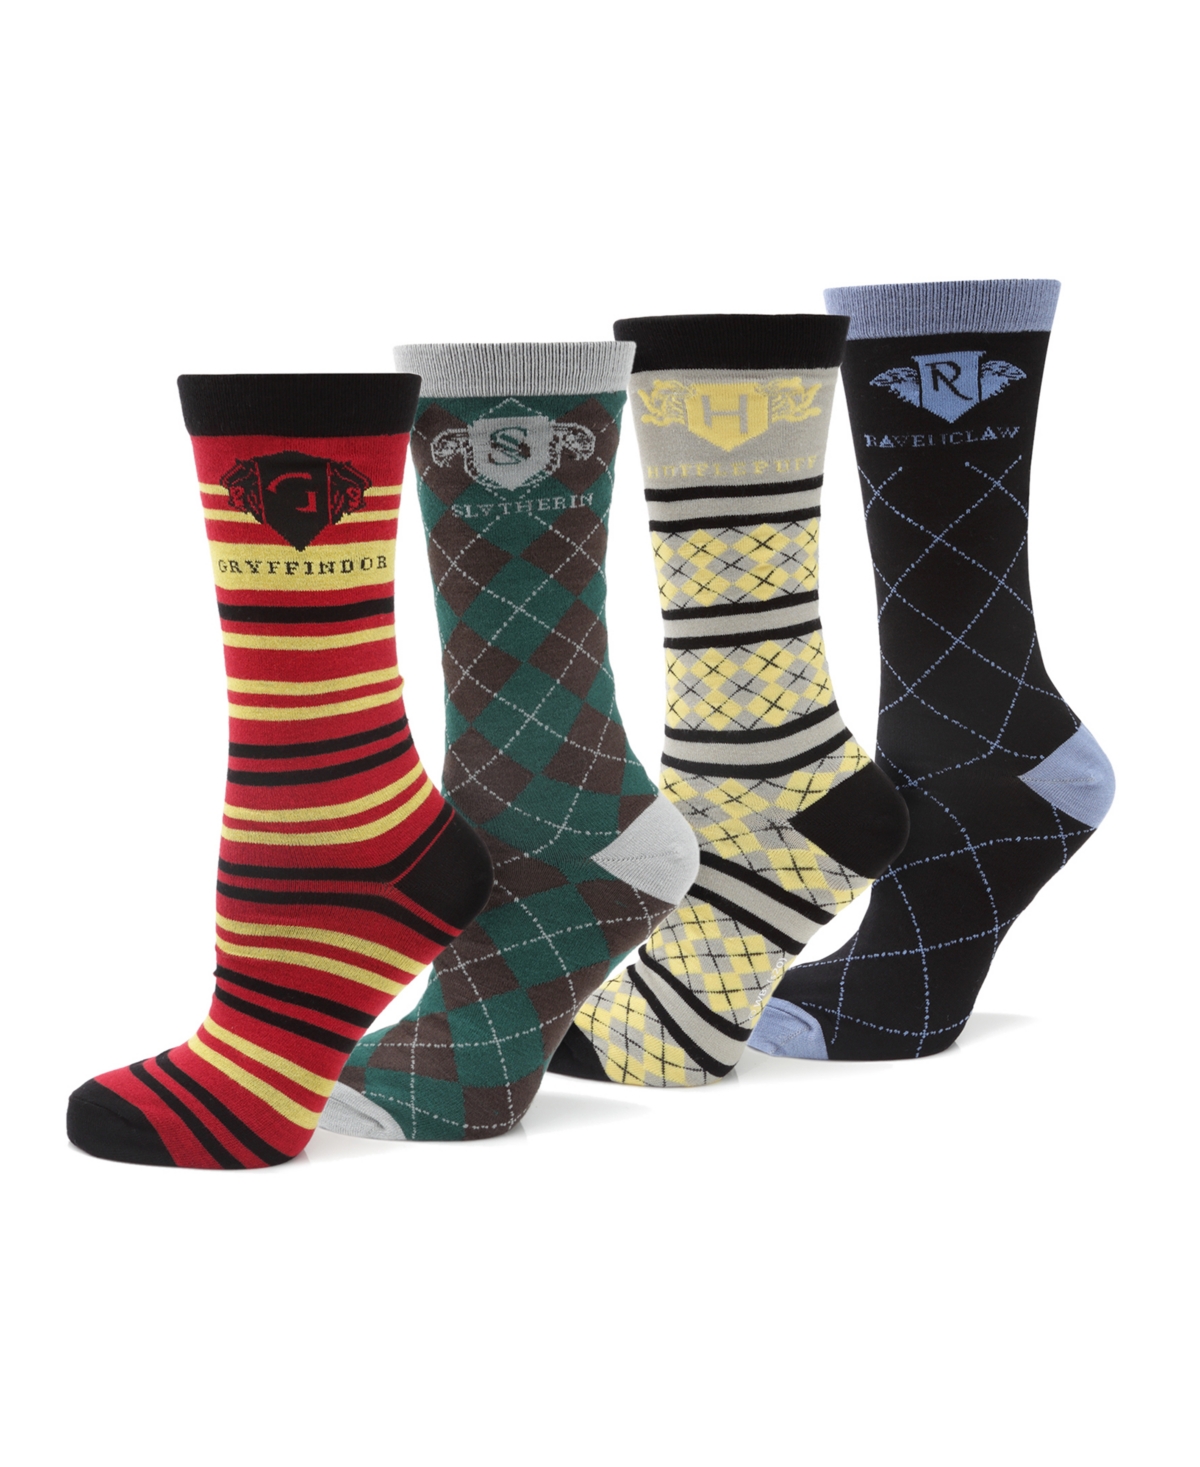 Men's House Socks Gift Set, Pack of 4 - Multi